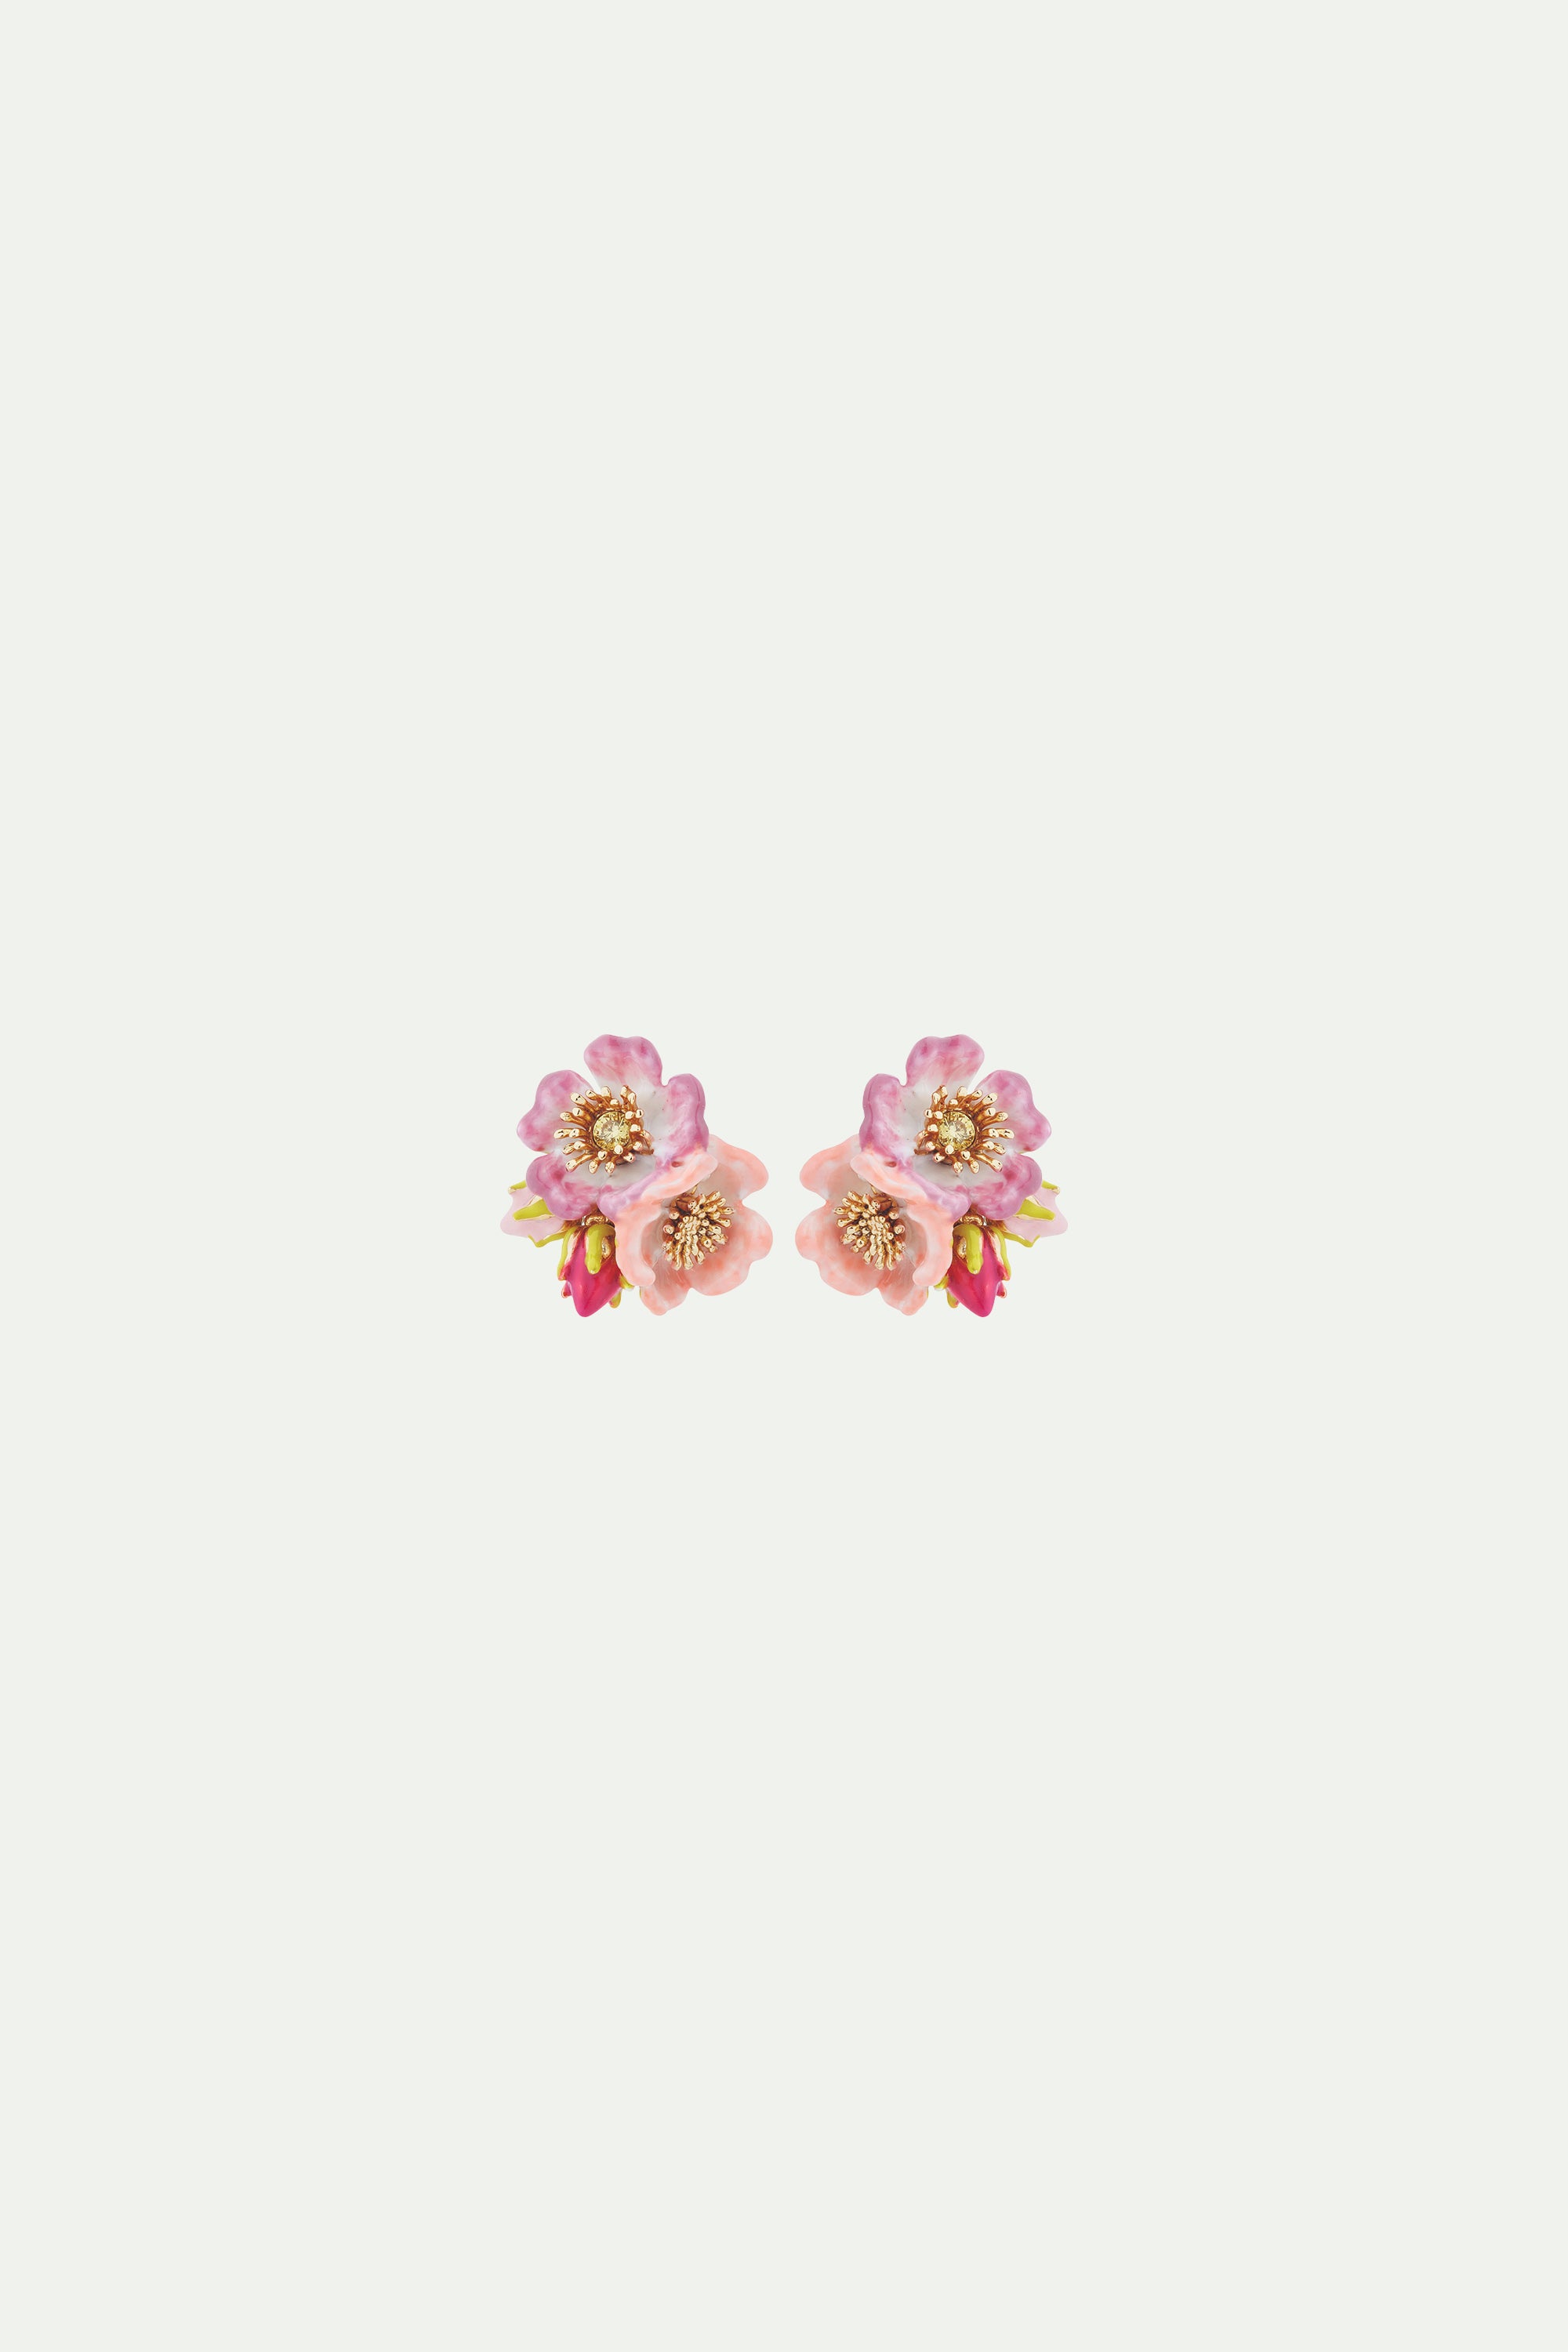 Boucles d'oreilles tiges roses d'églantier et cristal jaune